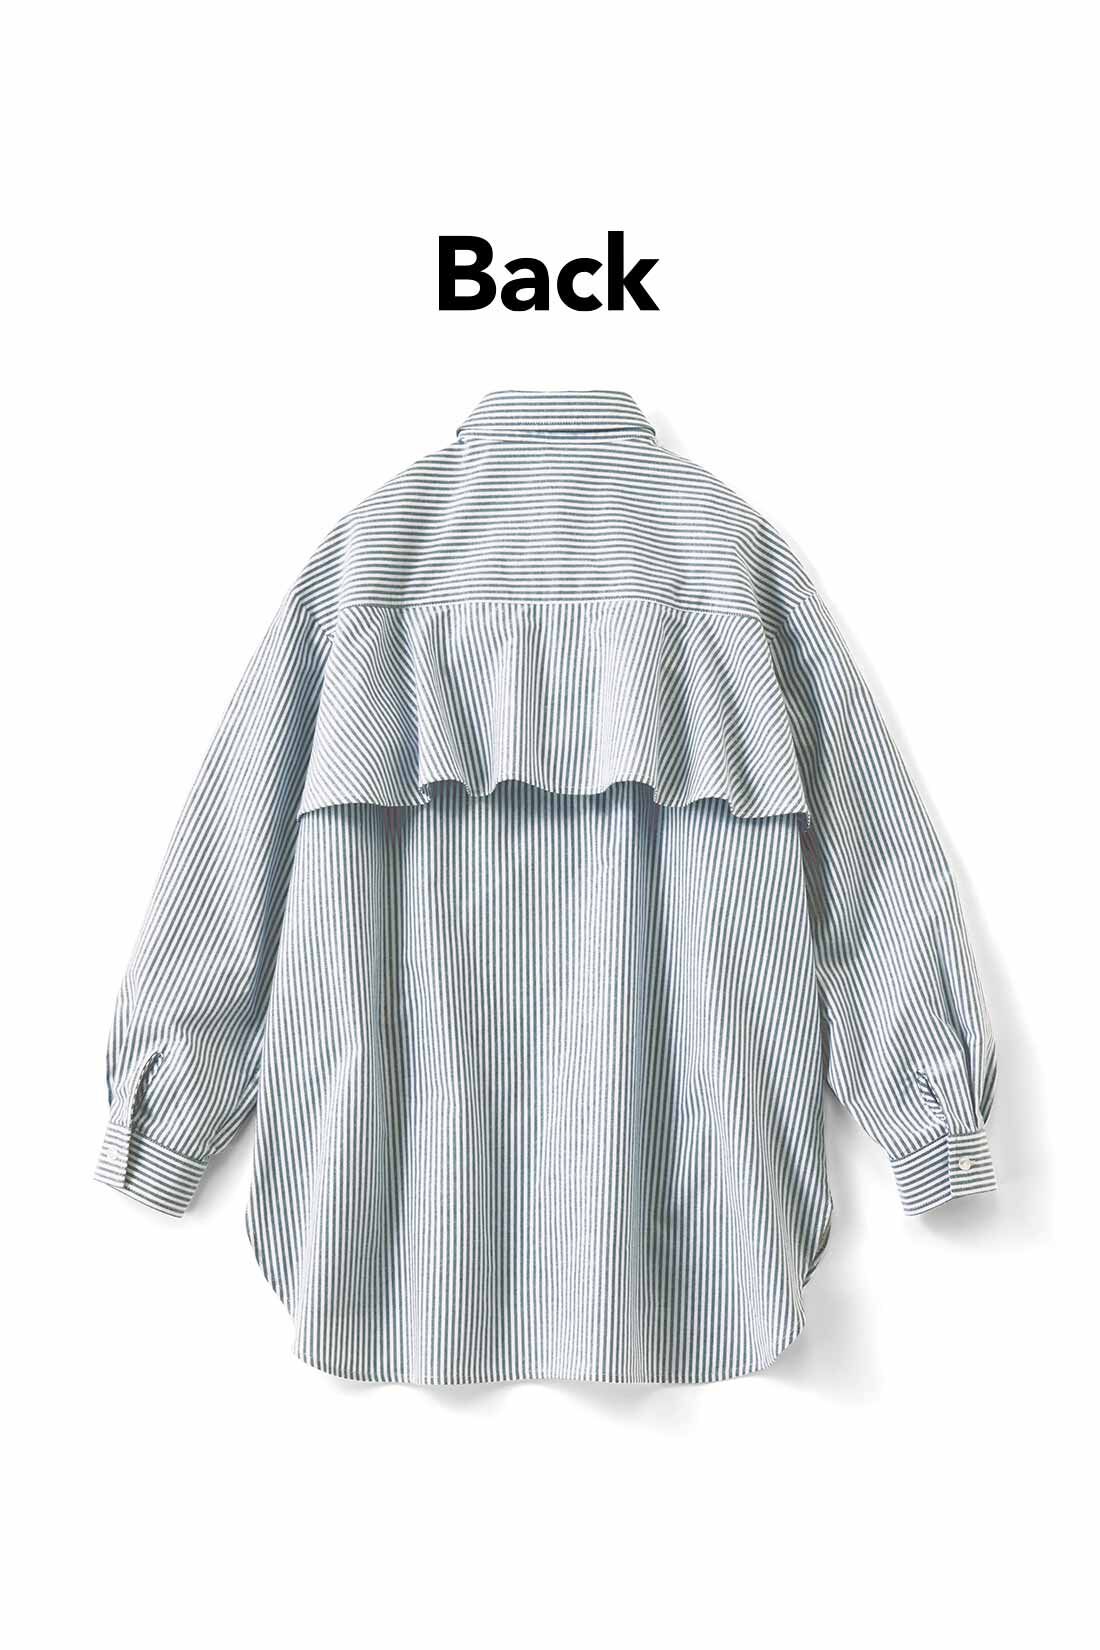 Real Stock|IEDIT[イディット]　バックフレアーデザインがきいた　オックスフォード素材のこなれ見えシャツ〈グレー〉|バックフレアーで後ろ姿に女らしさをプラス。